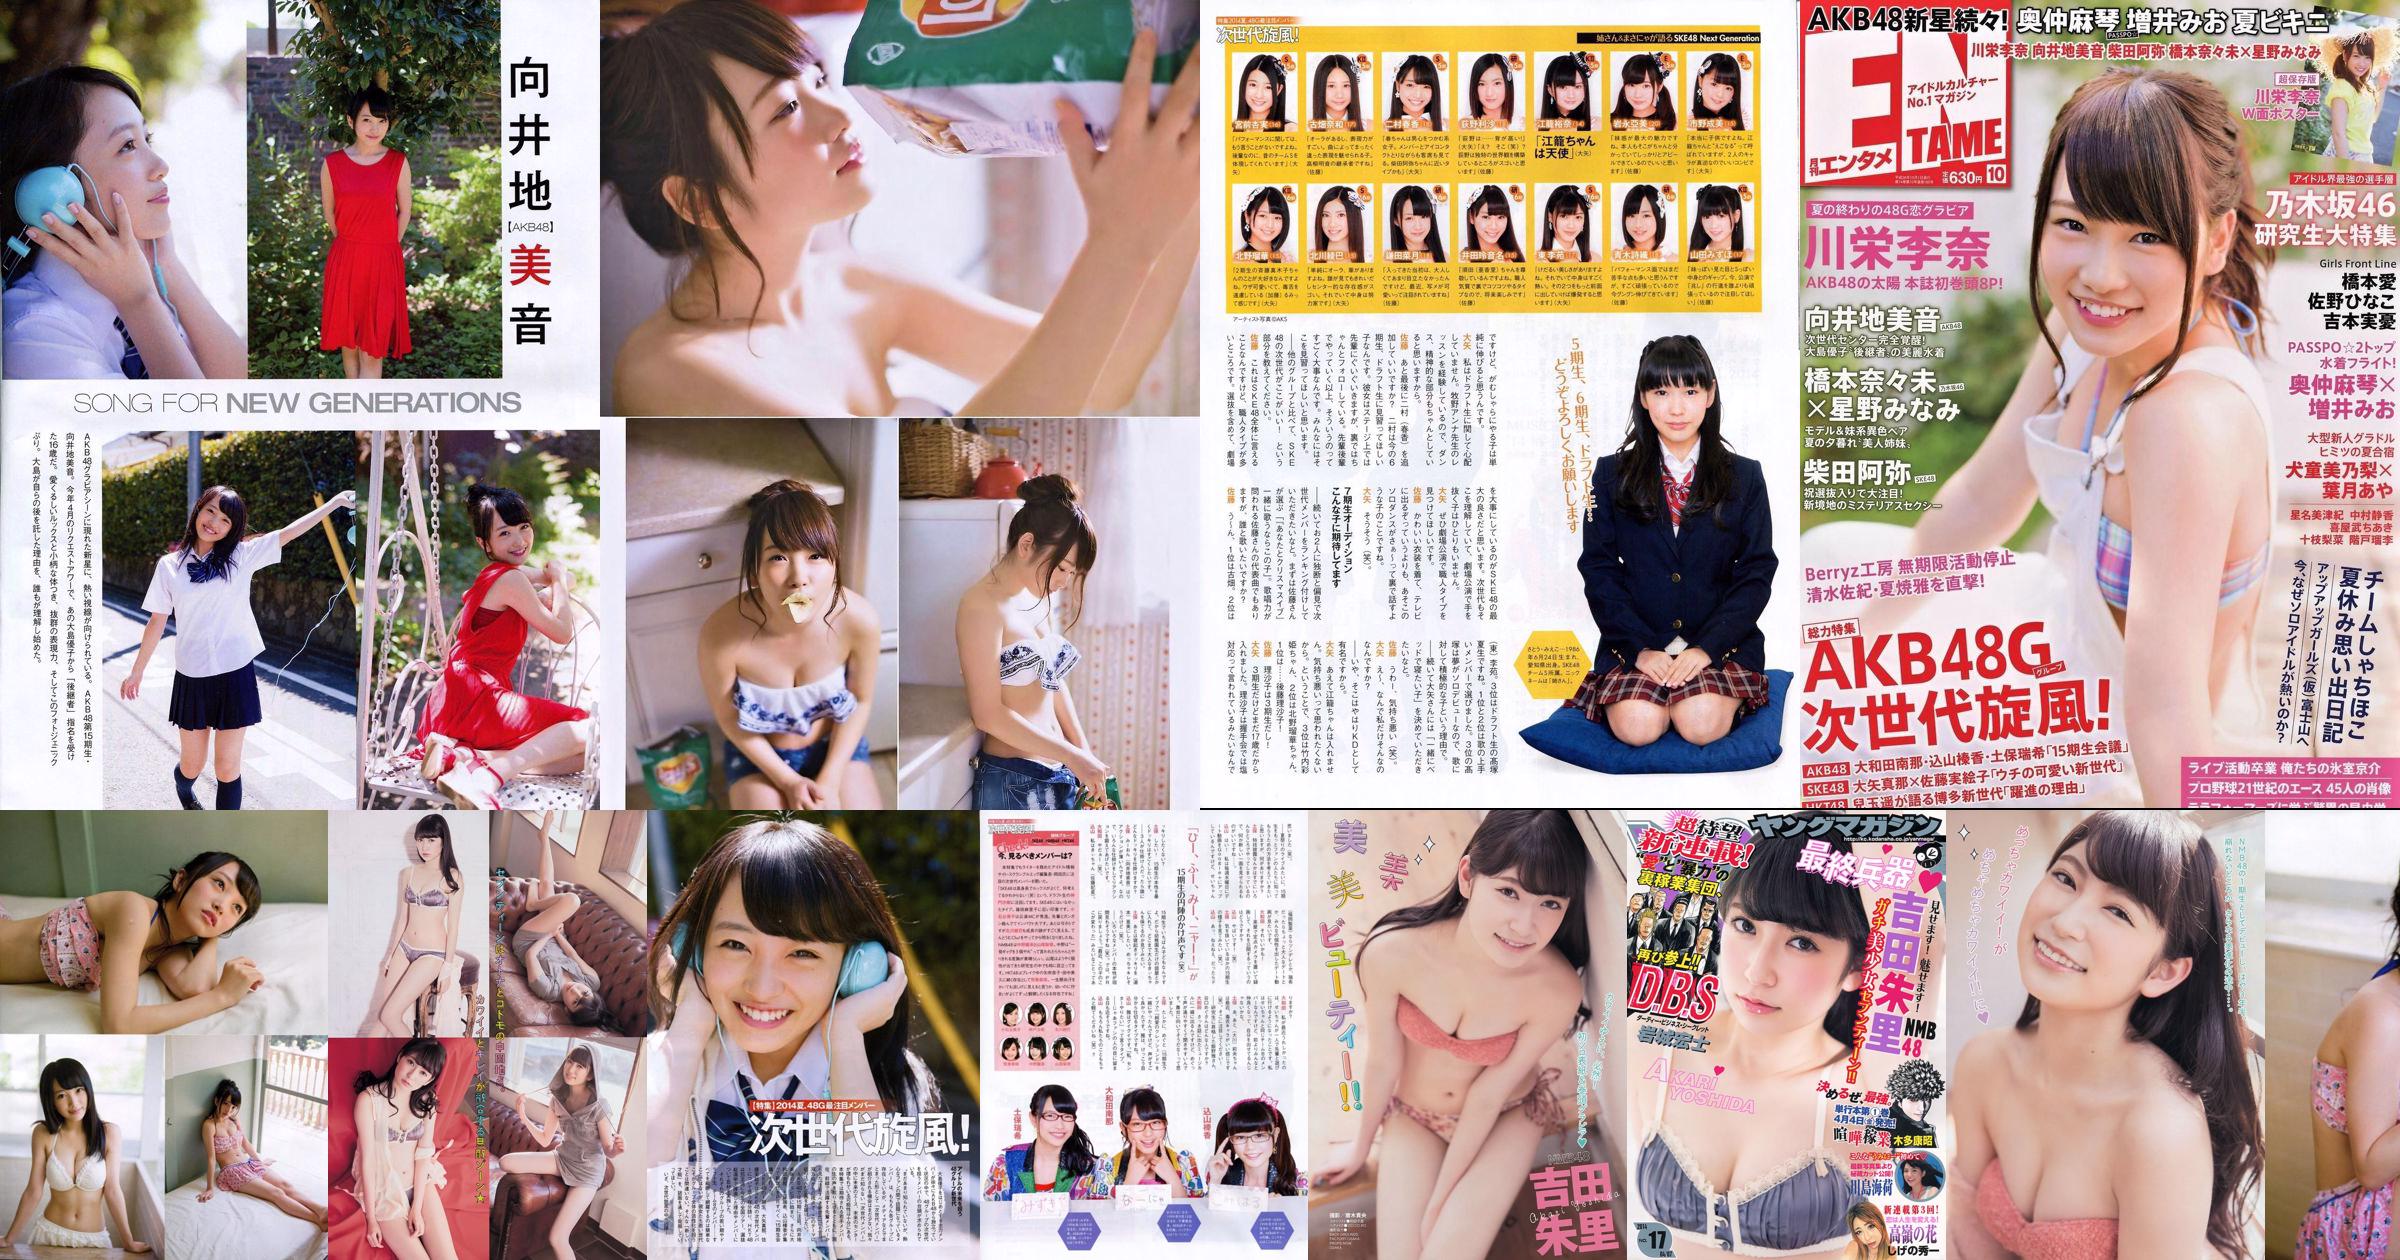 [Young Magazine] Akari Yoshida Umika Kawashima 2014 No.17 Foto No.12a01b Pagina 1